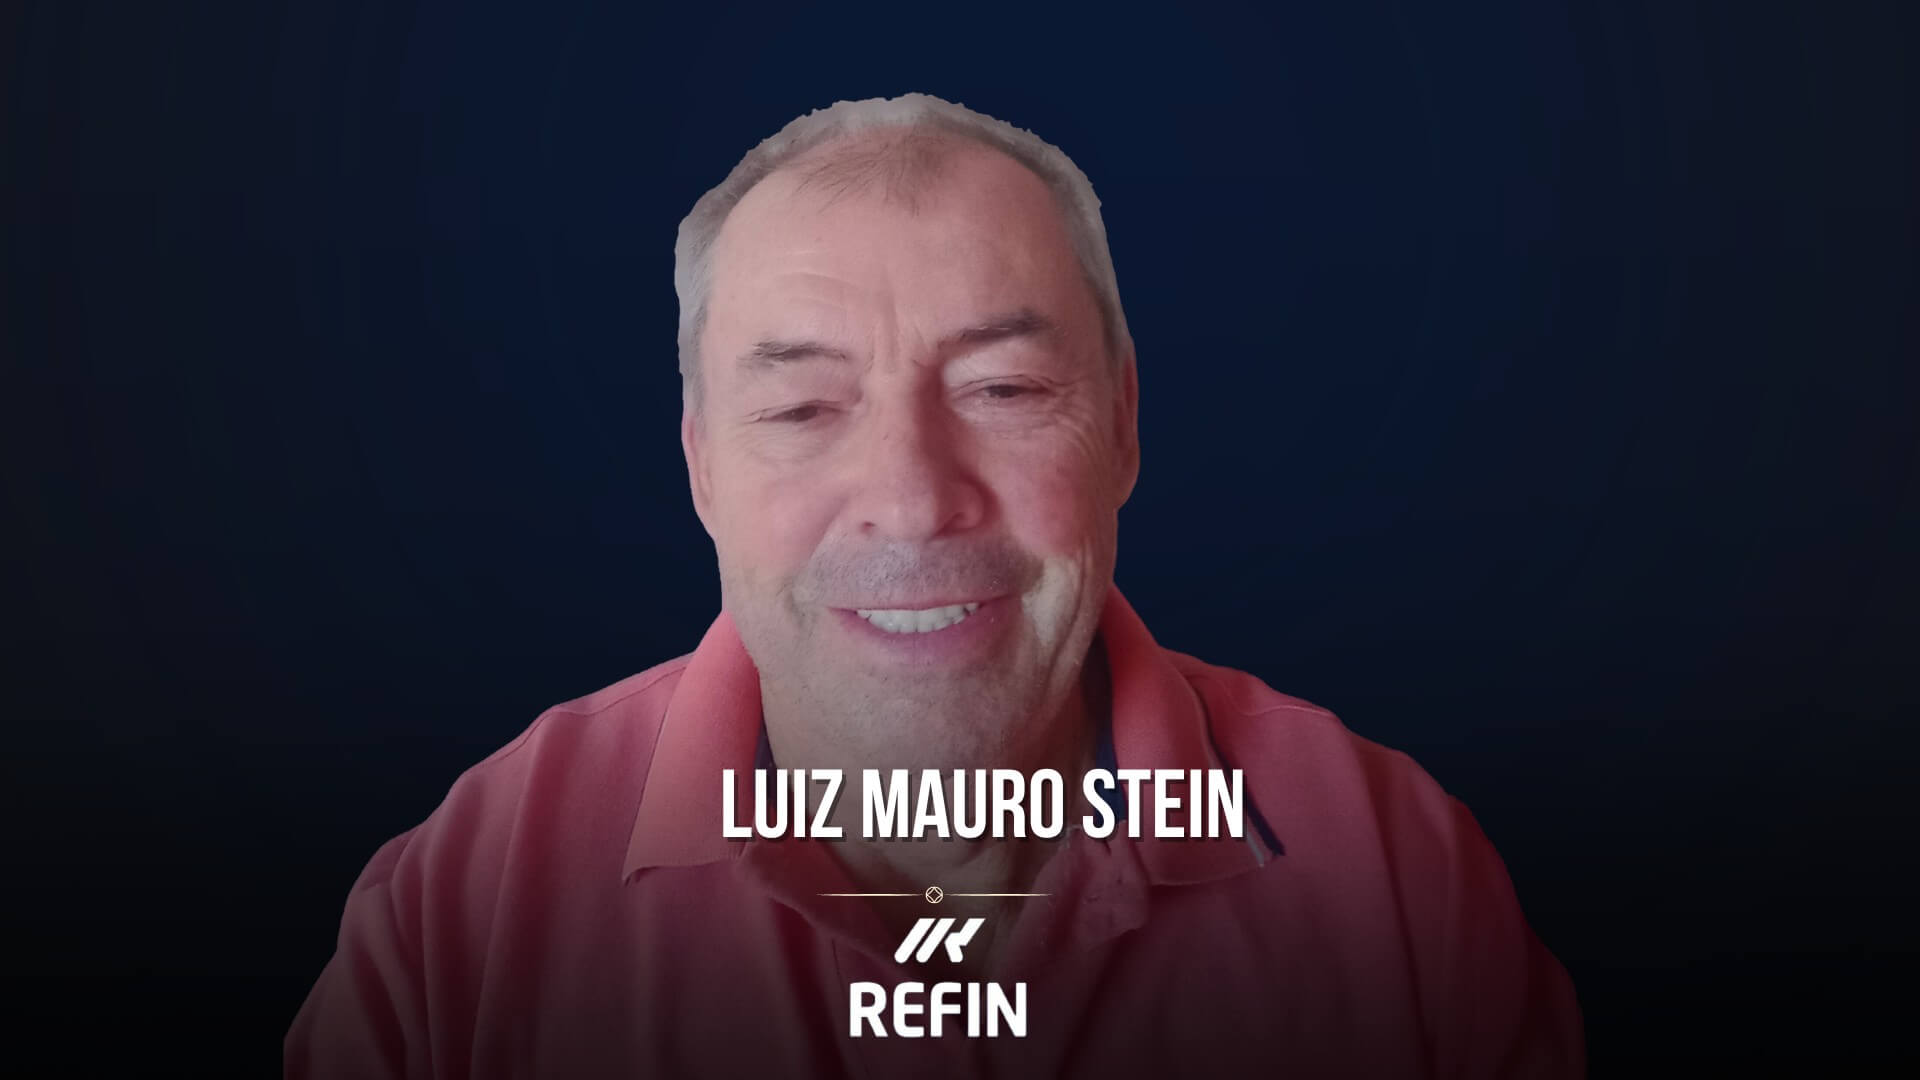 LUIZ MAURO STEIN